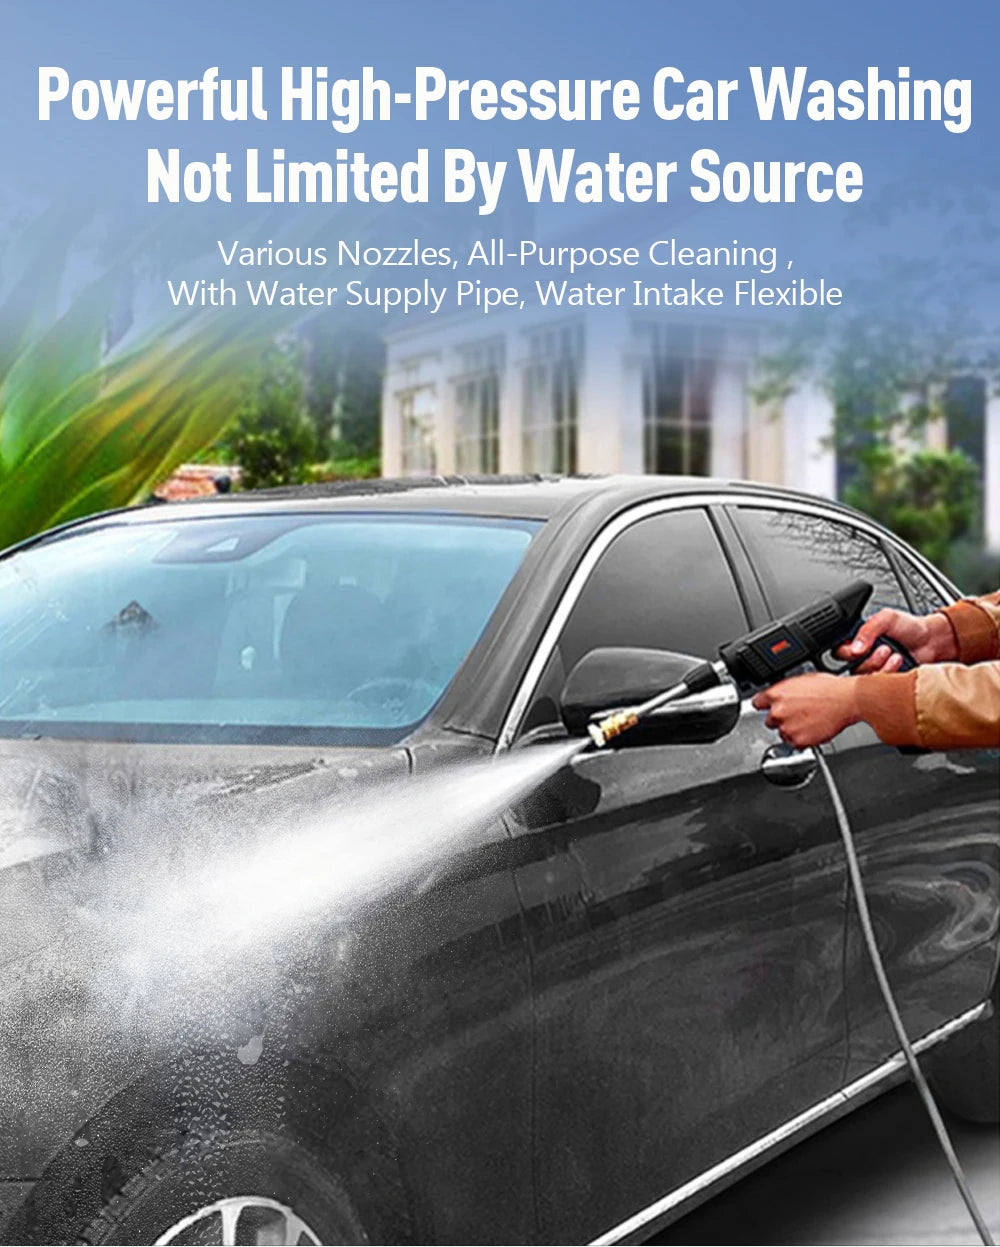 Automobile Water 96\48\24HV Gun Cordless High Pressure Cleaner Washer Spray Water Gun Car Wash Pressure Water Cleaning Machine